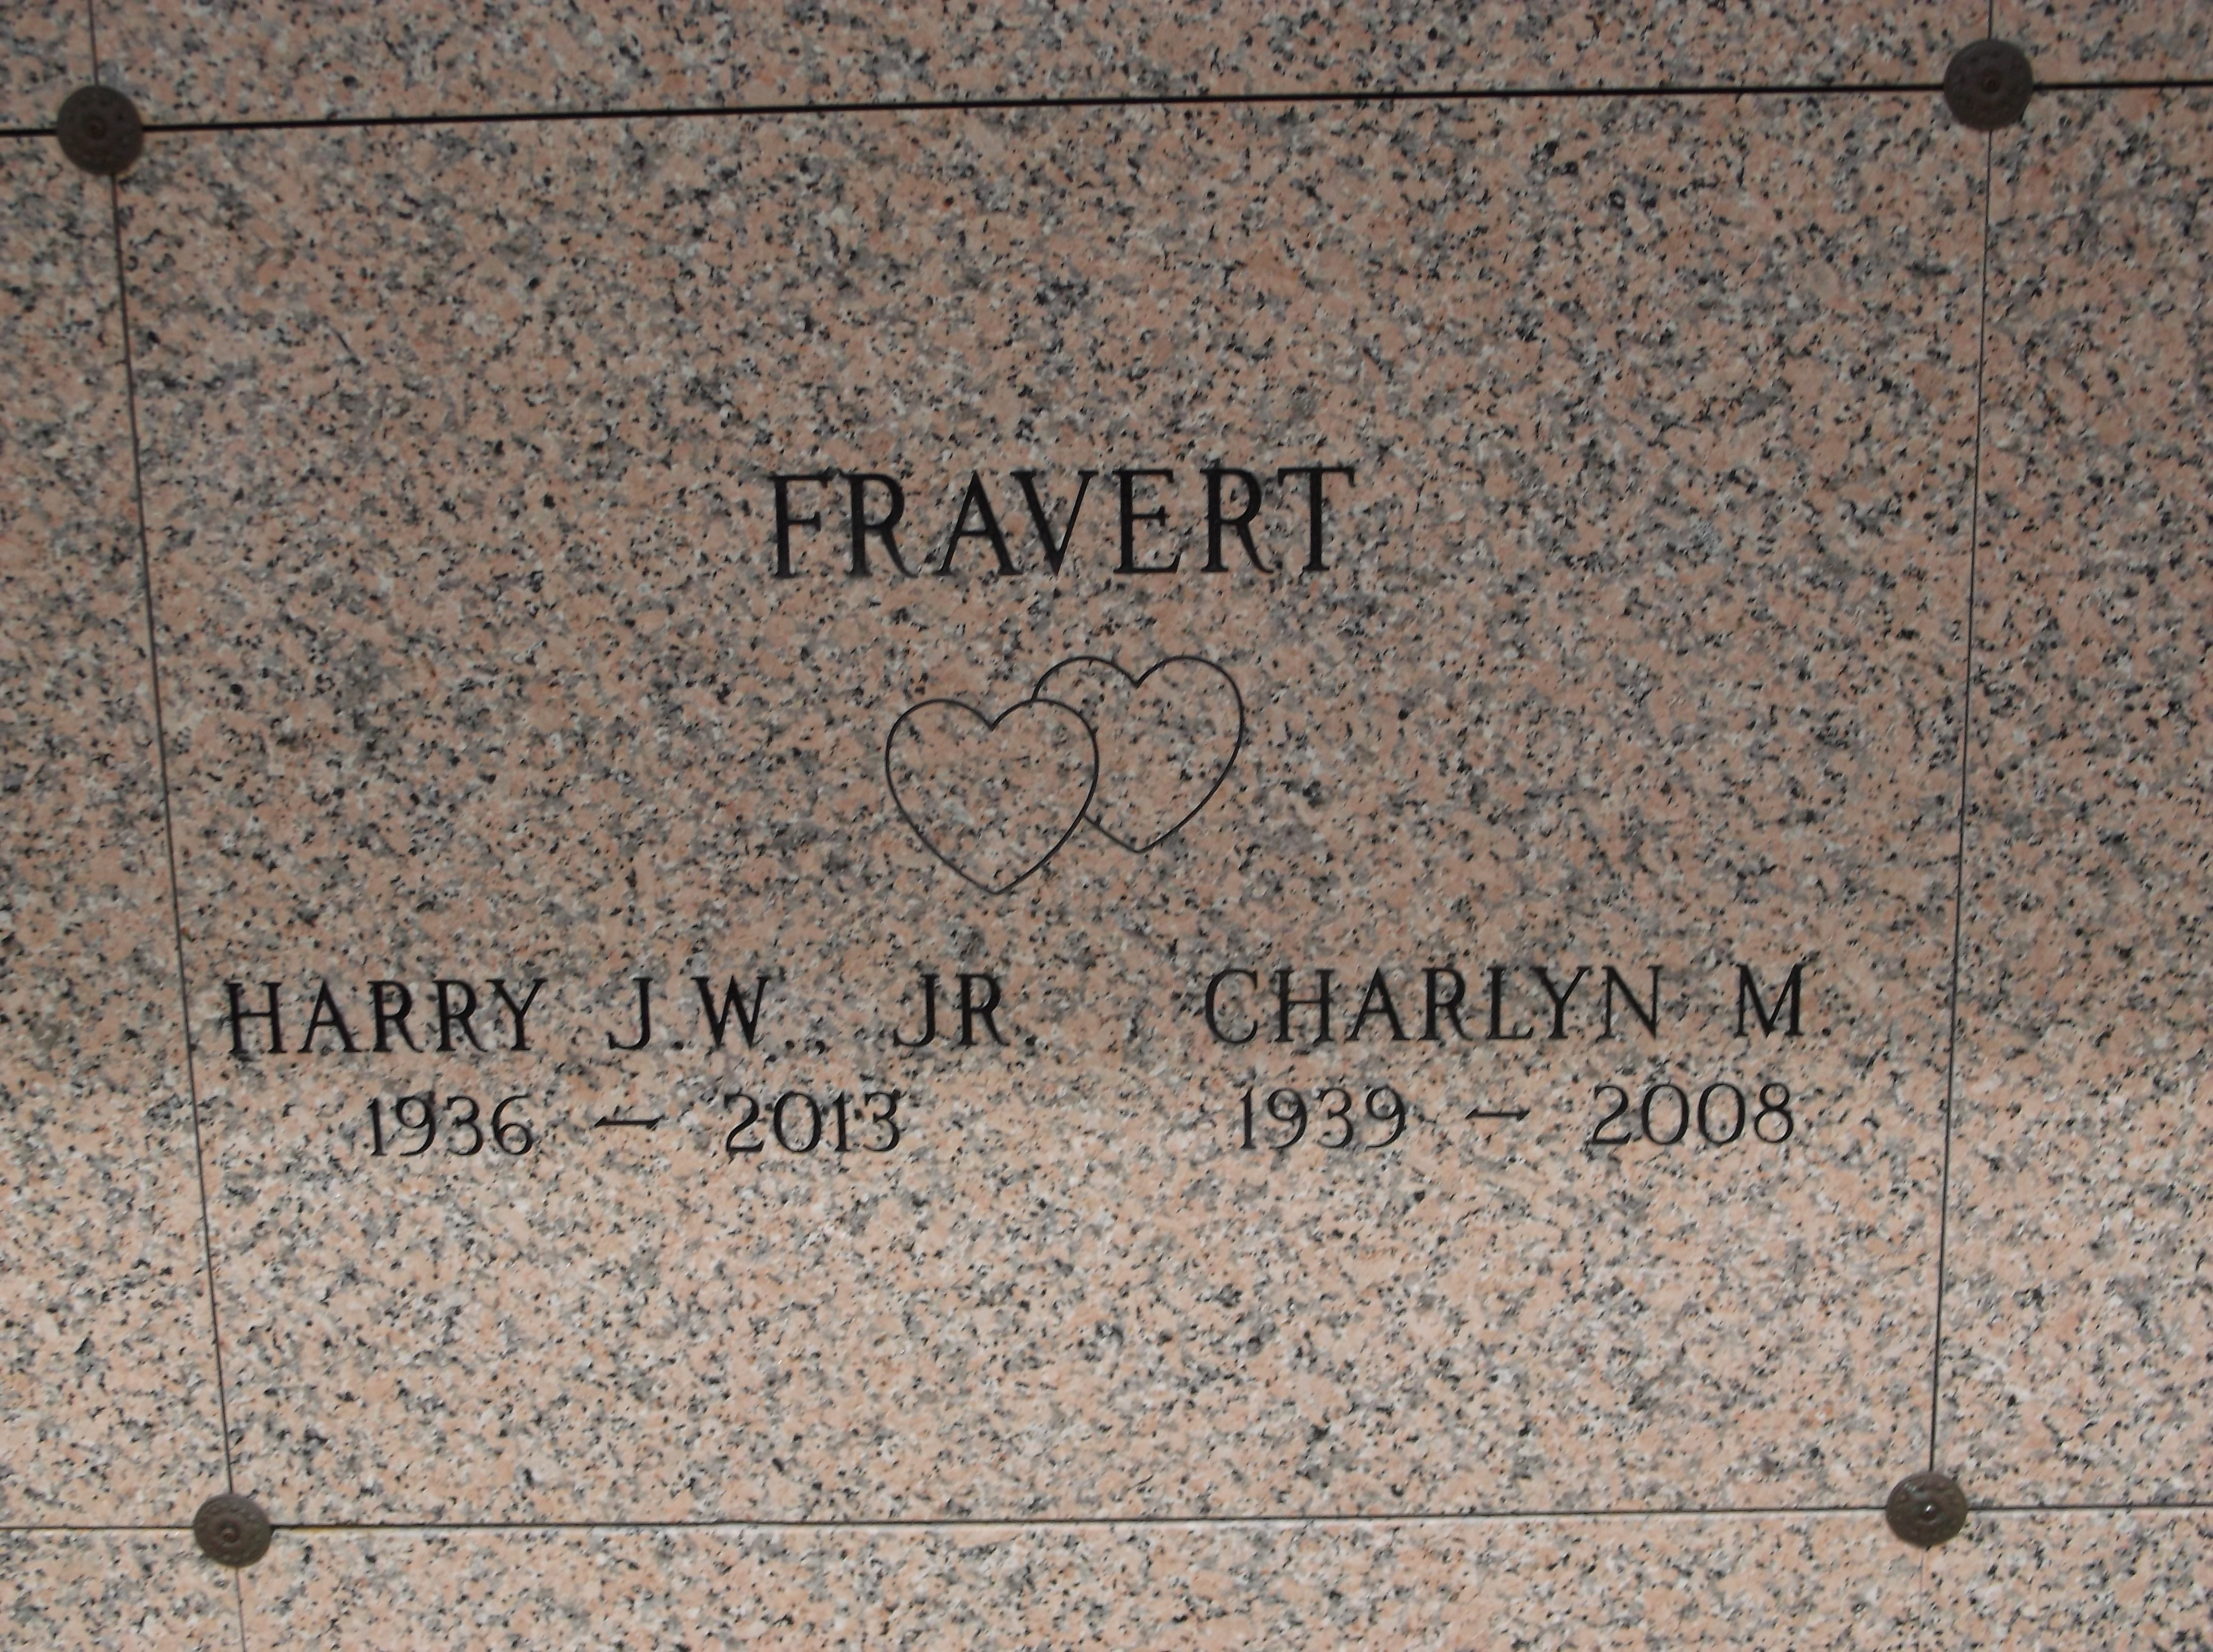 Harry J W Fravert, Jr